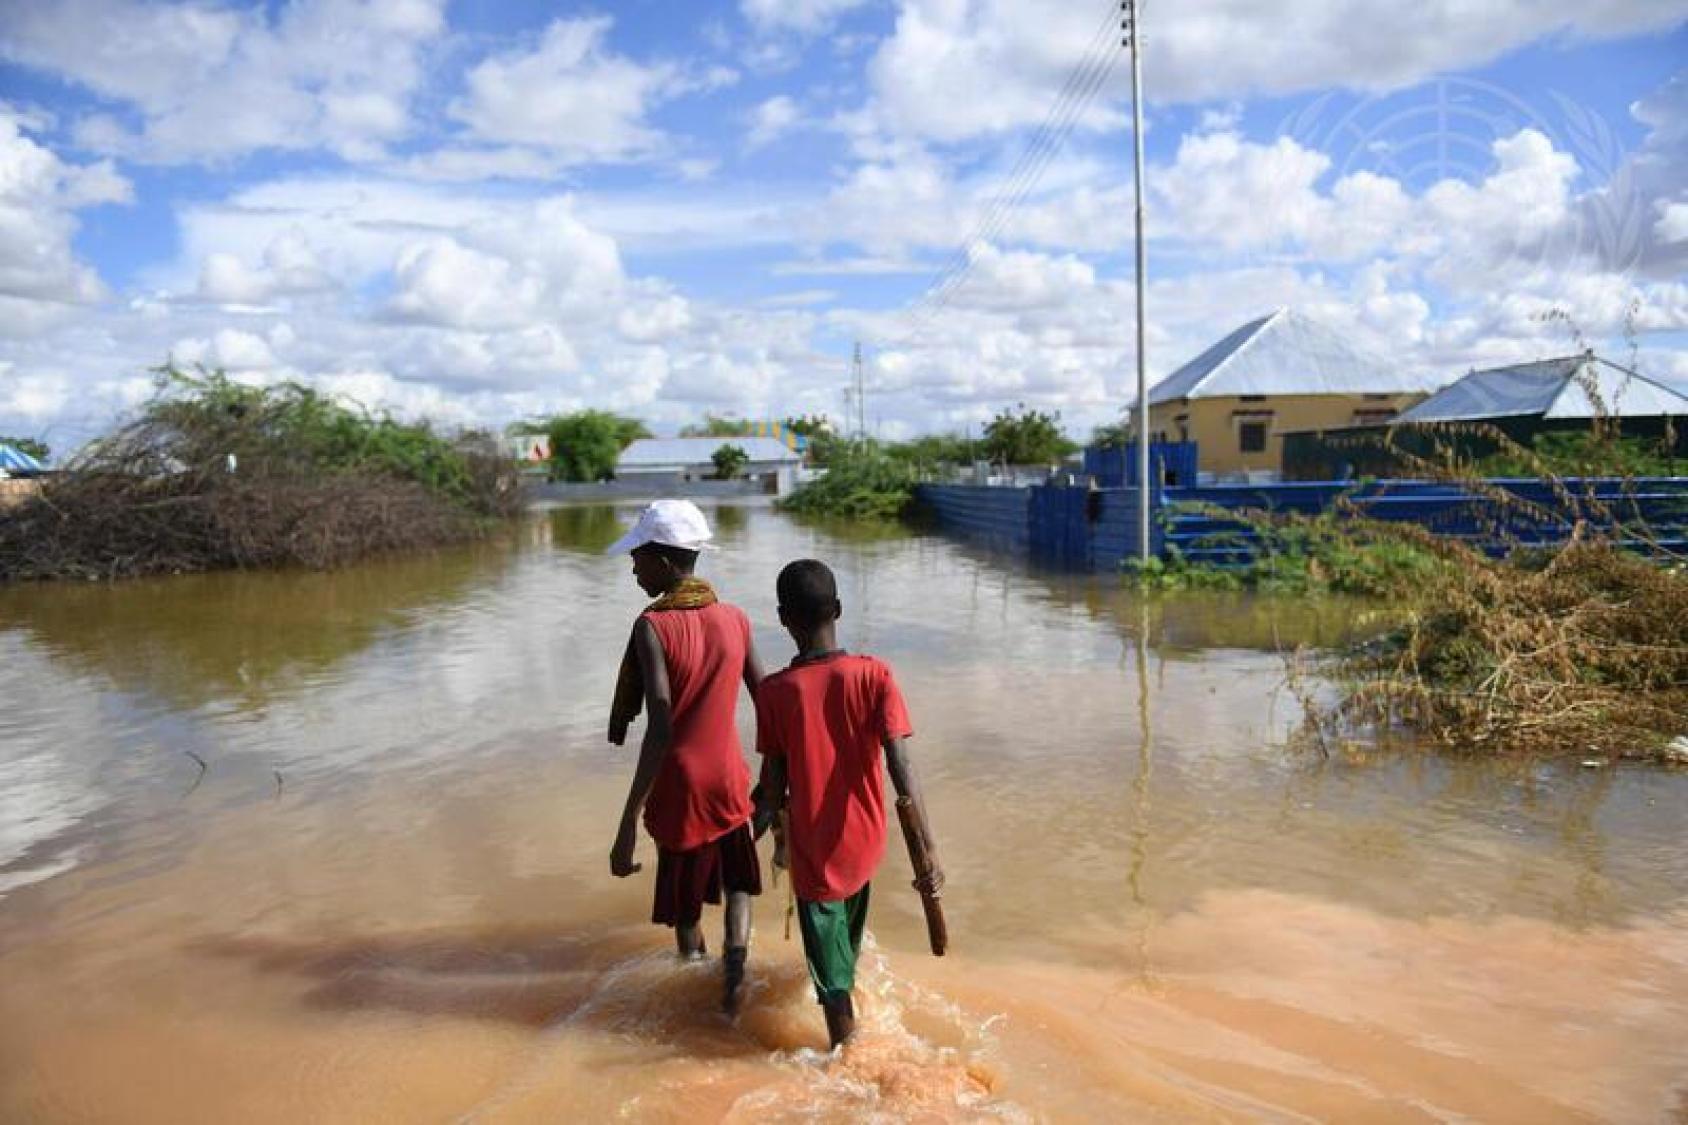 En Somalie, dans une zone résidentielle inondée, deux jeunes garçons marchent les pieds dans l’eau, dos à la caméra, par une journée ensoleillée.